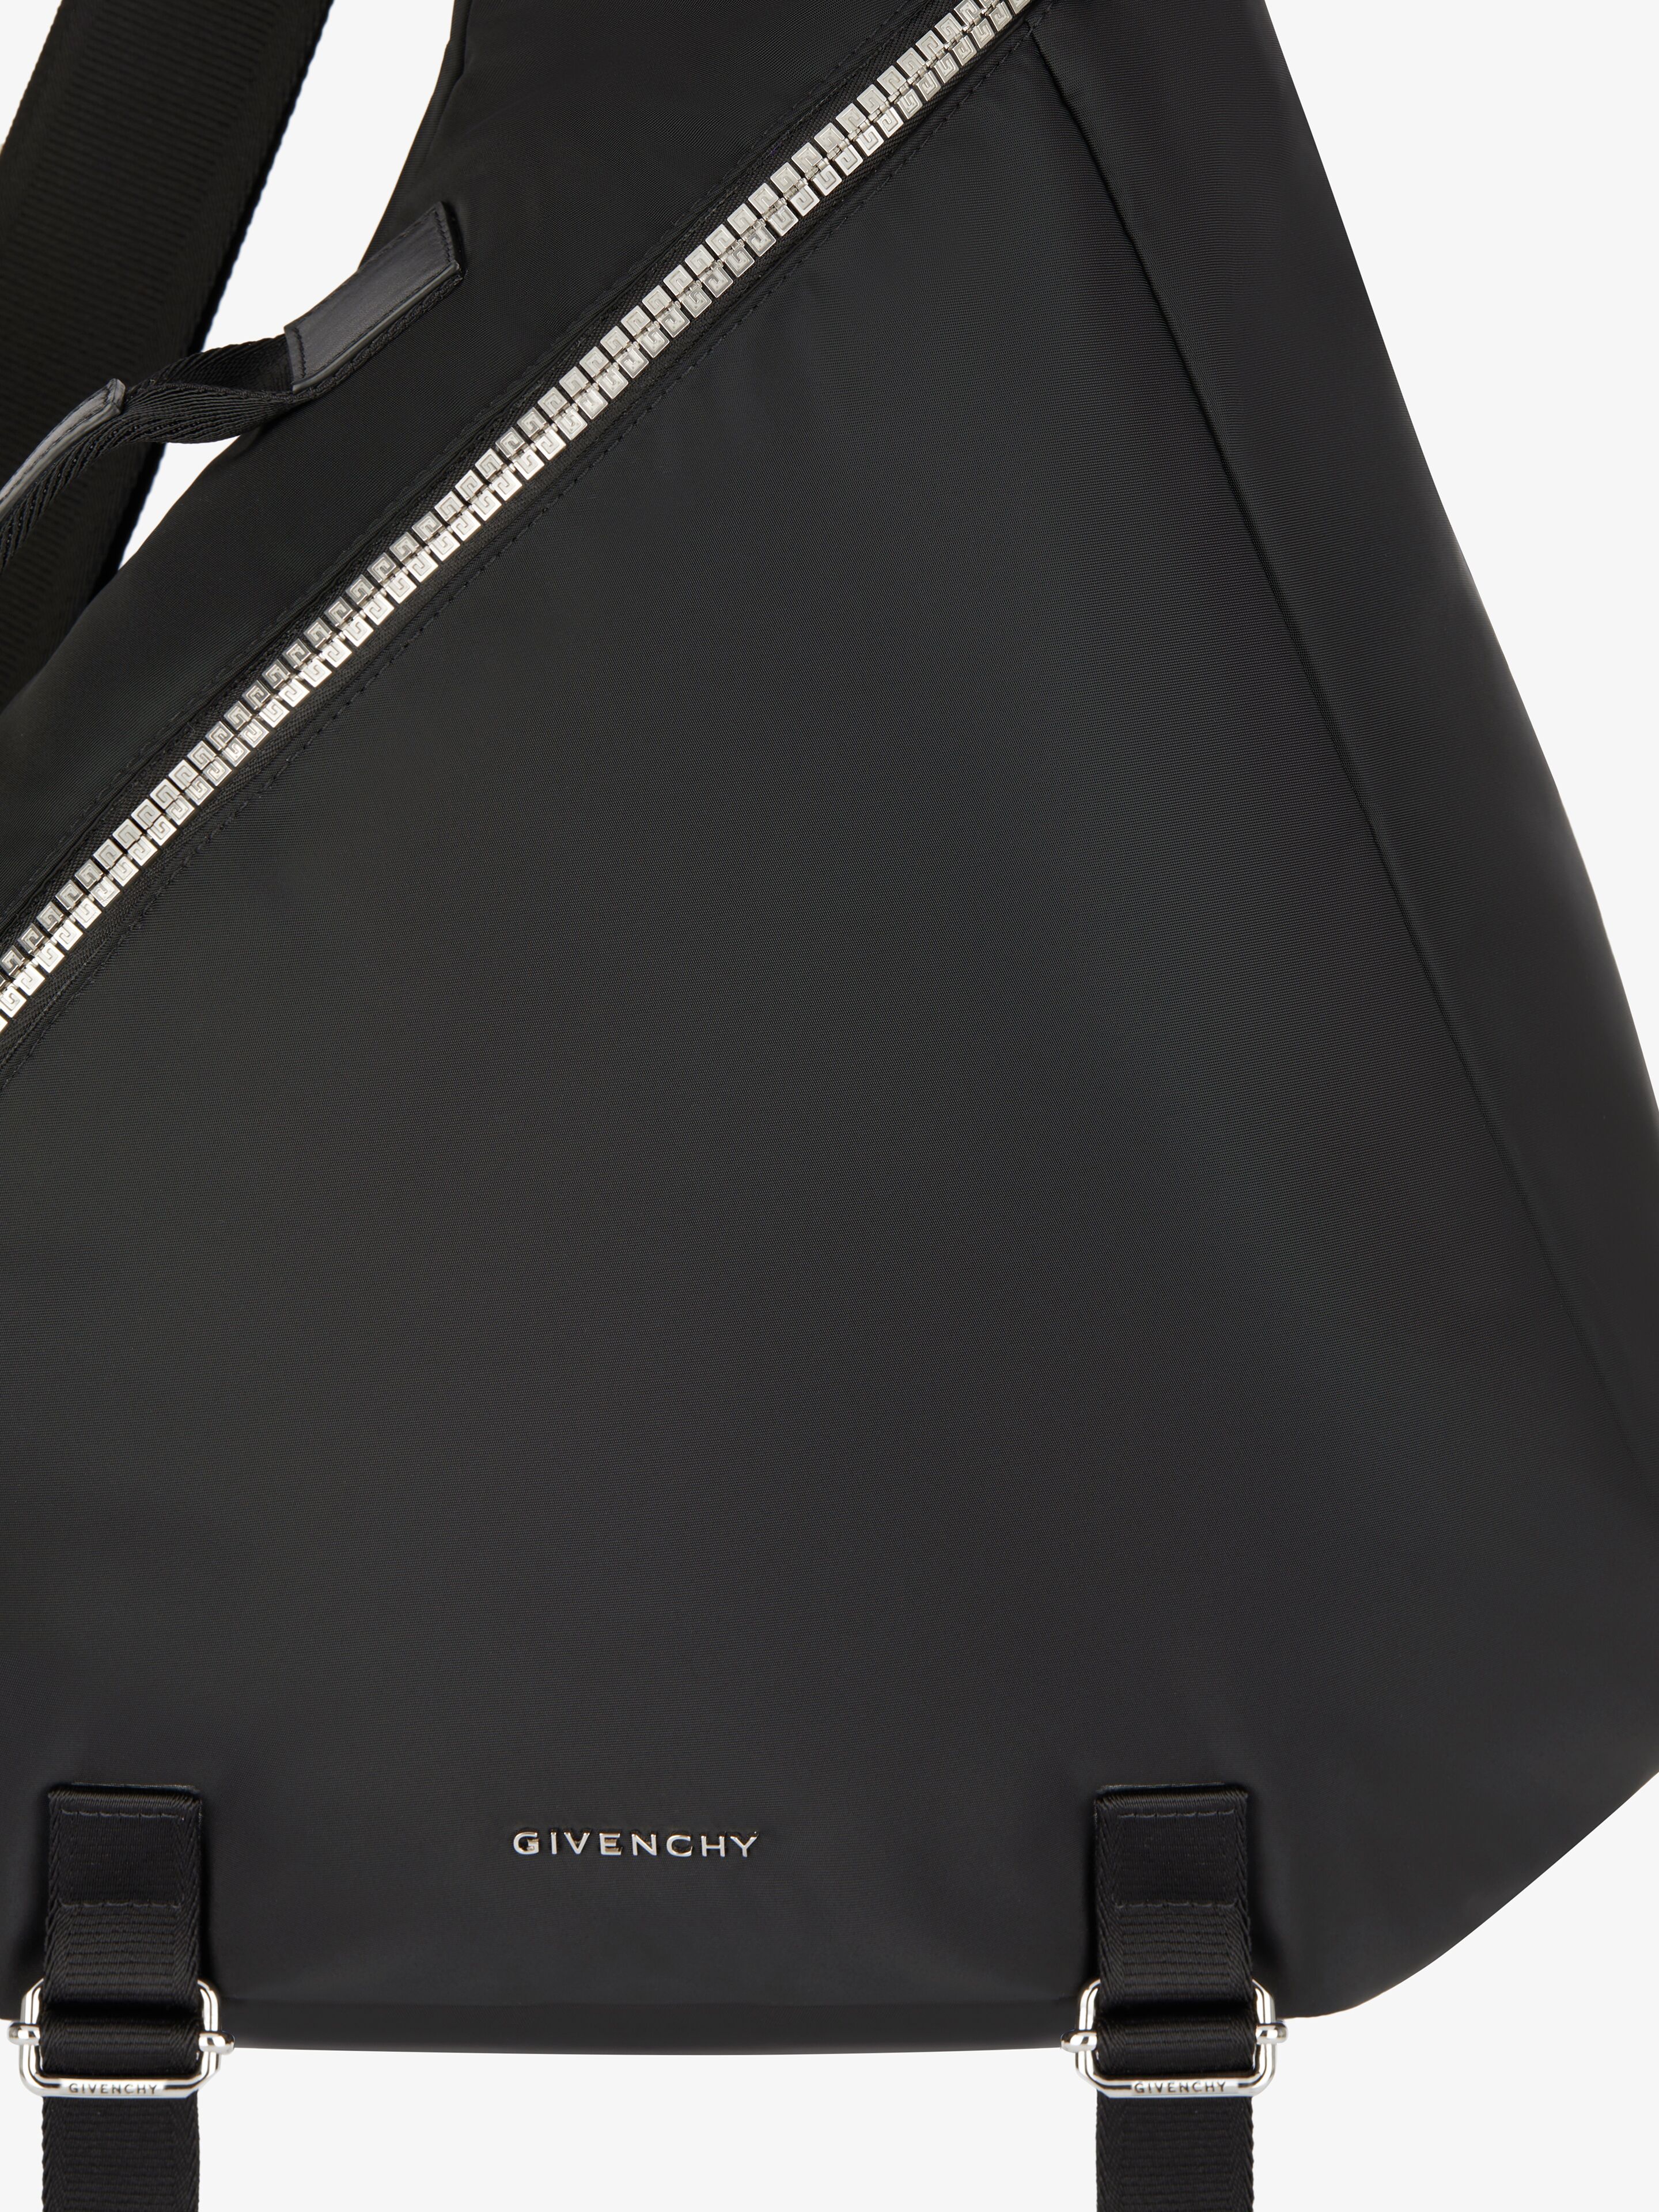 Givenchy Gジップ トライアングル ナイロン バッグ 23SSモデル - 通販